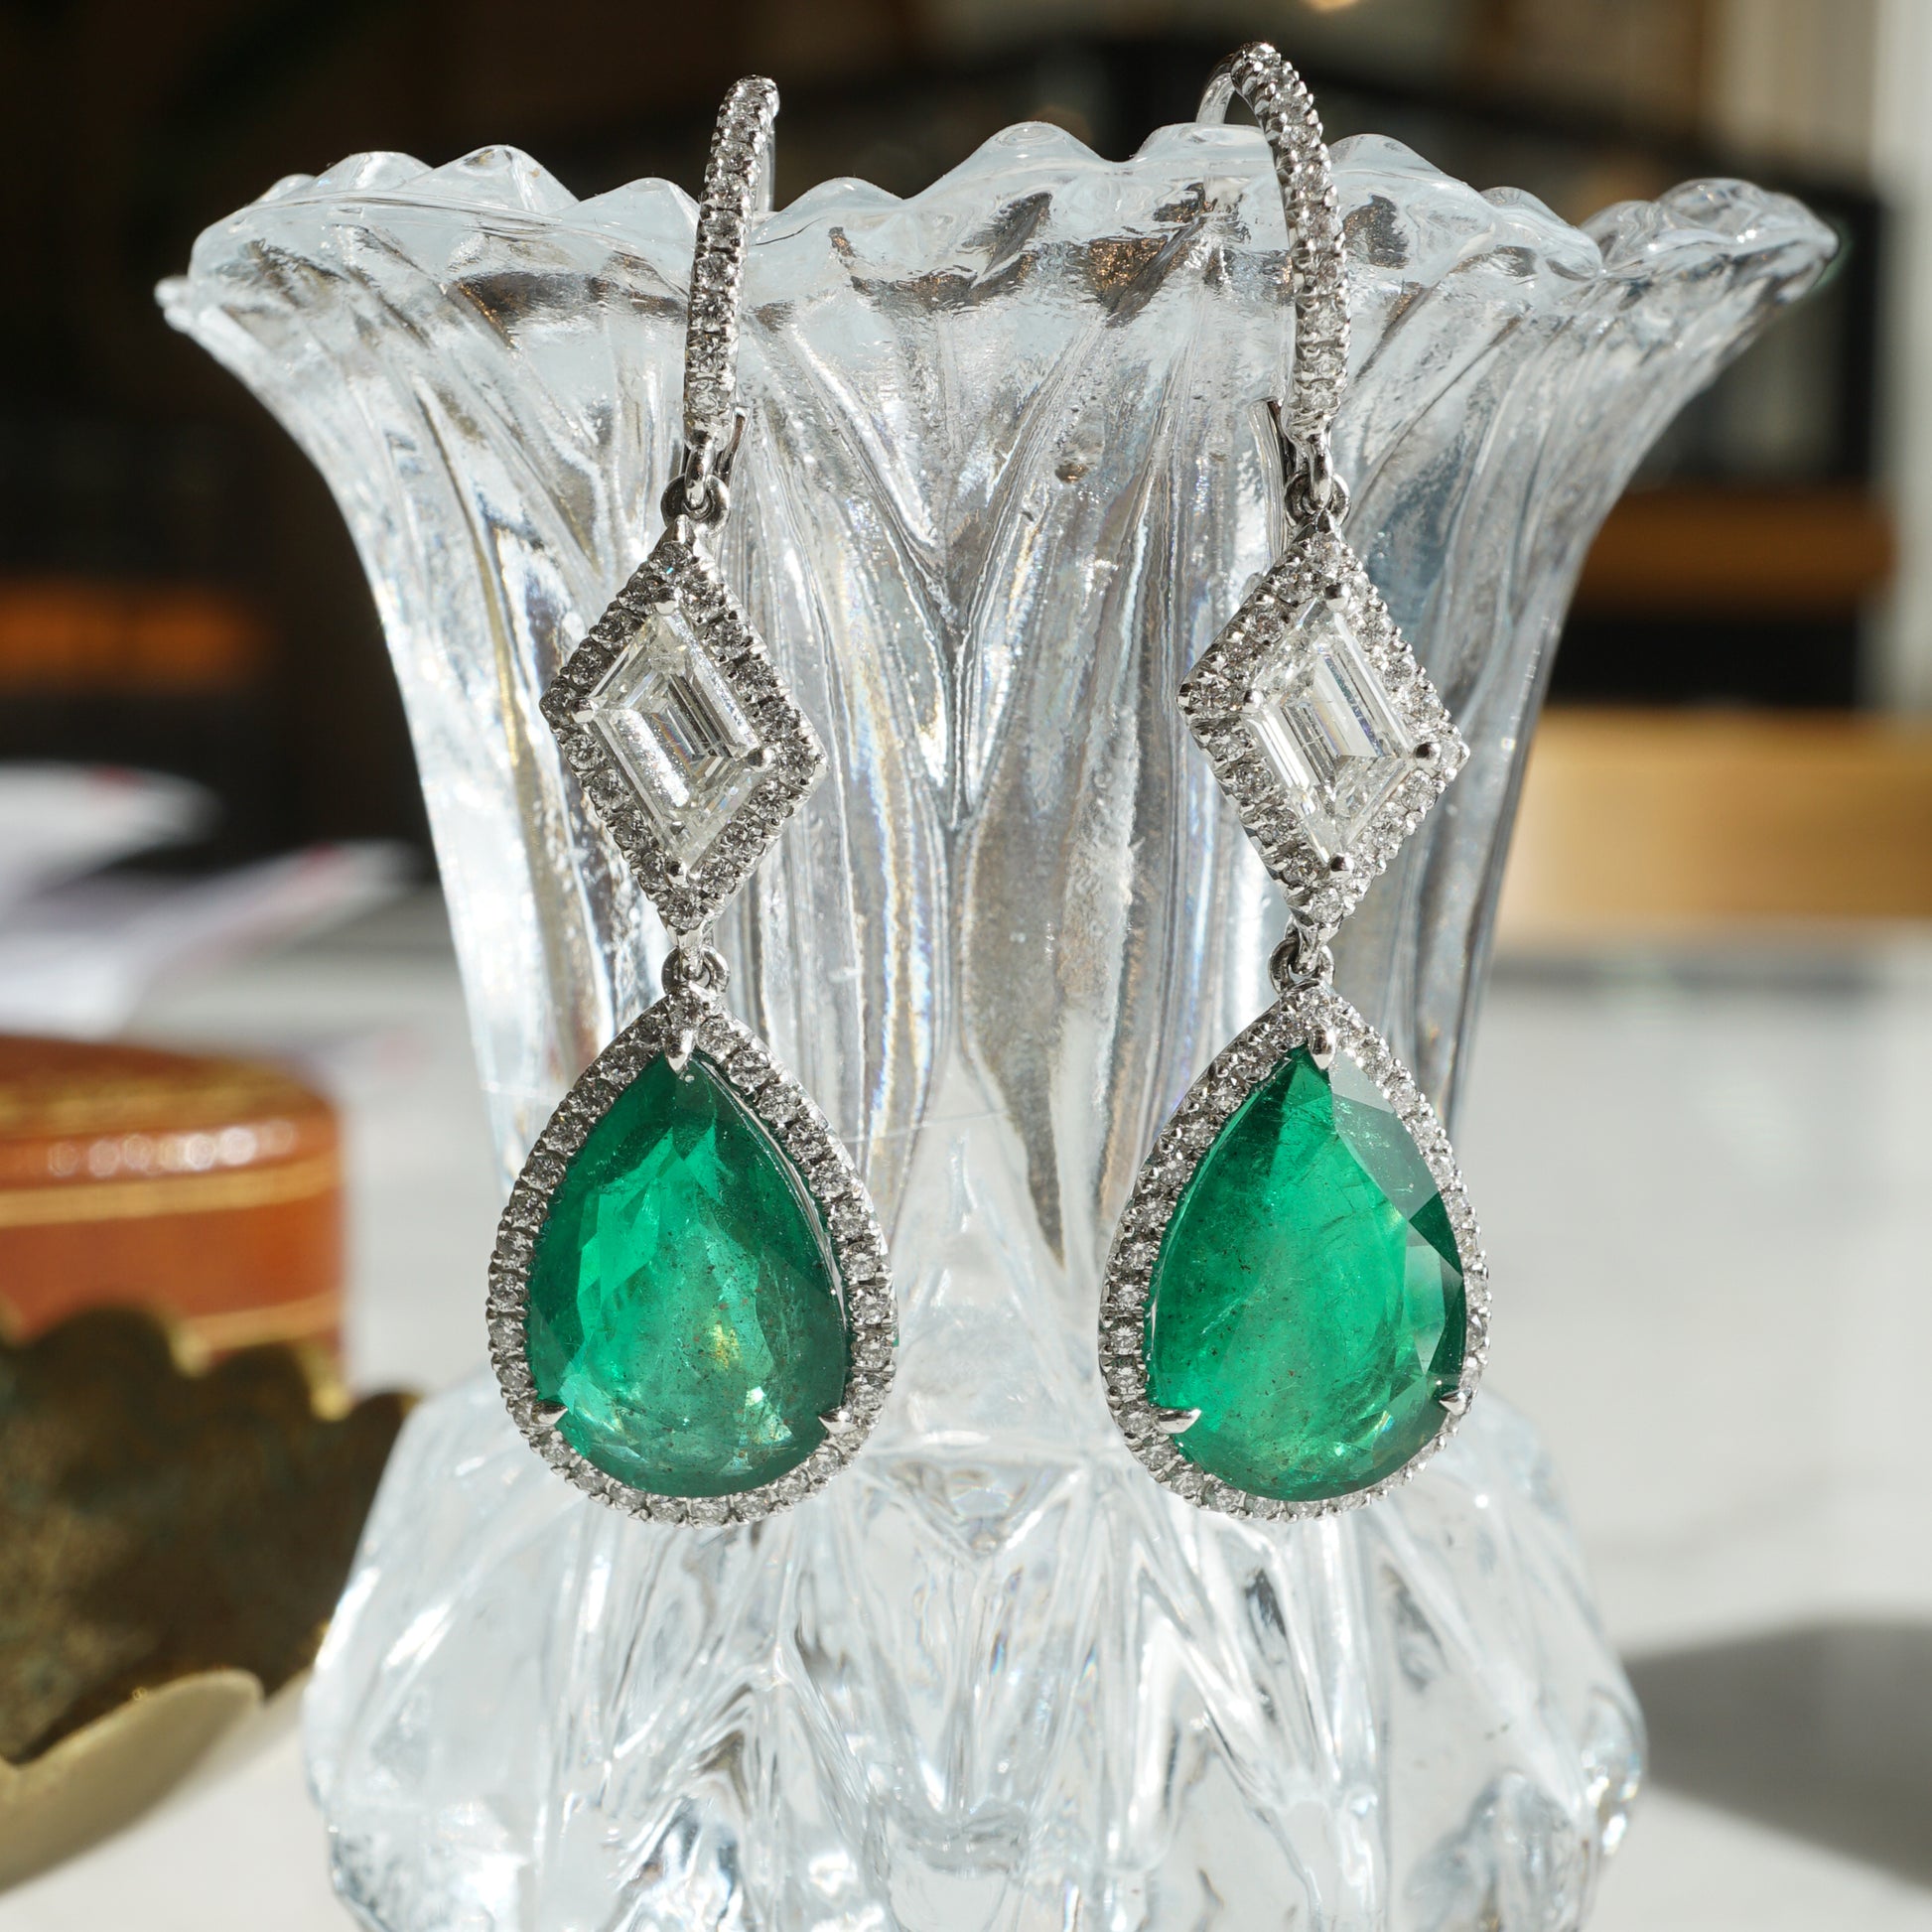 7.65 Pear Cut Emerald & Diamond Drop Earrings in Platinum